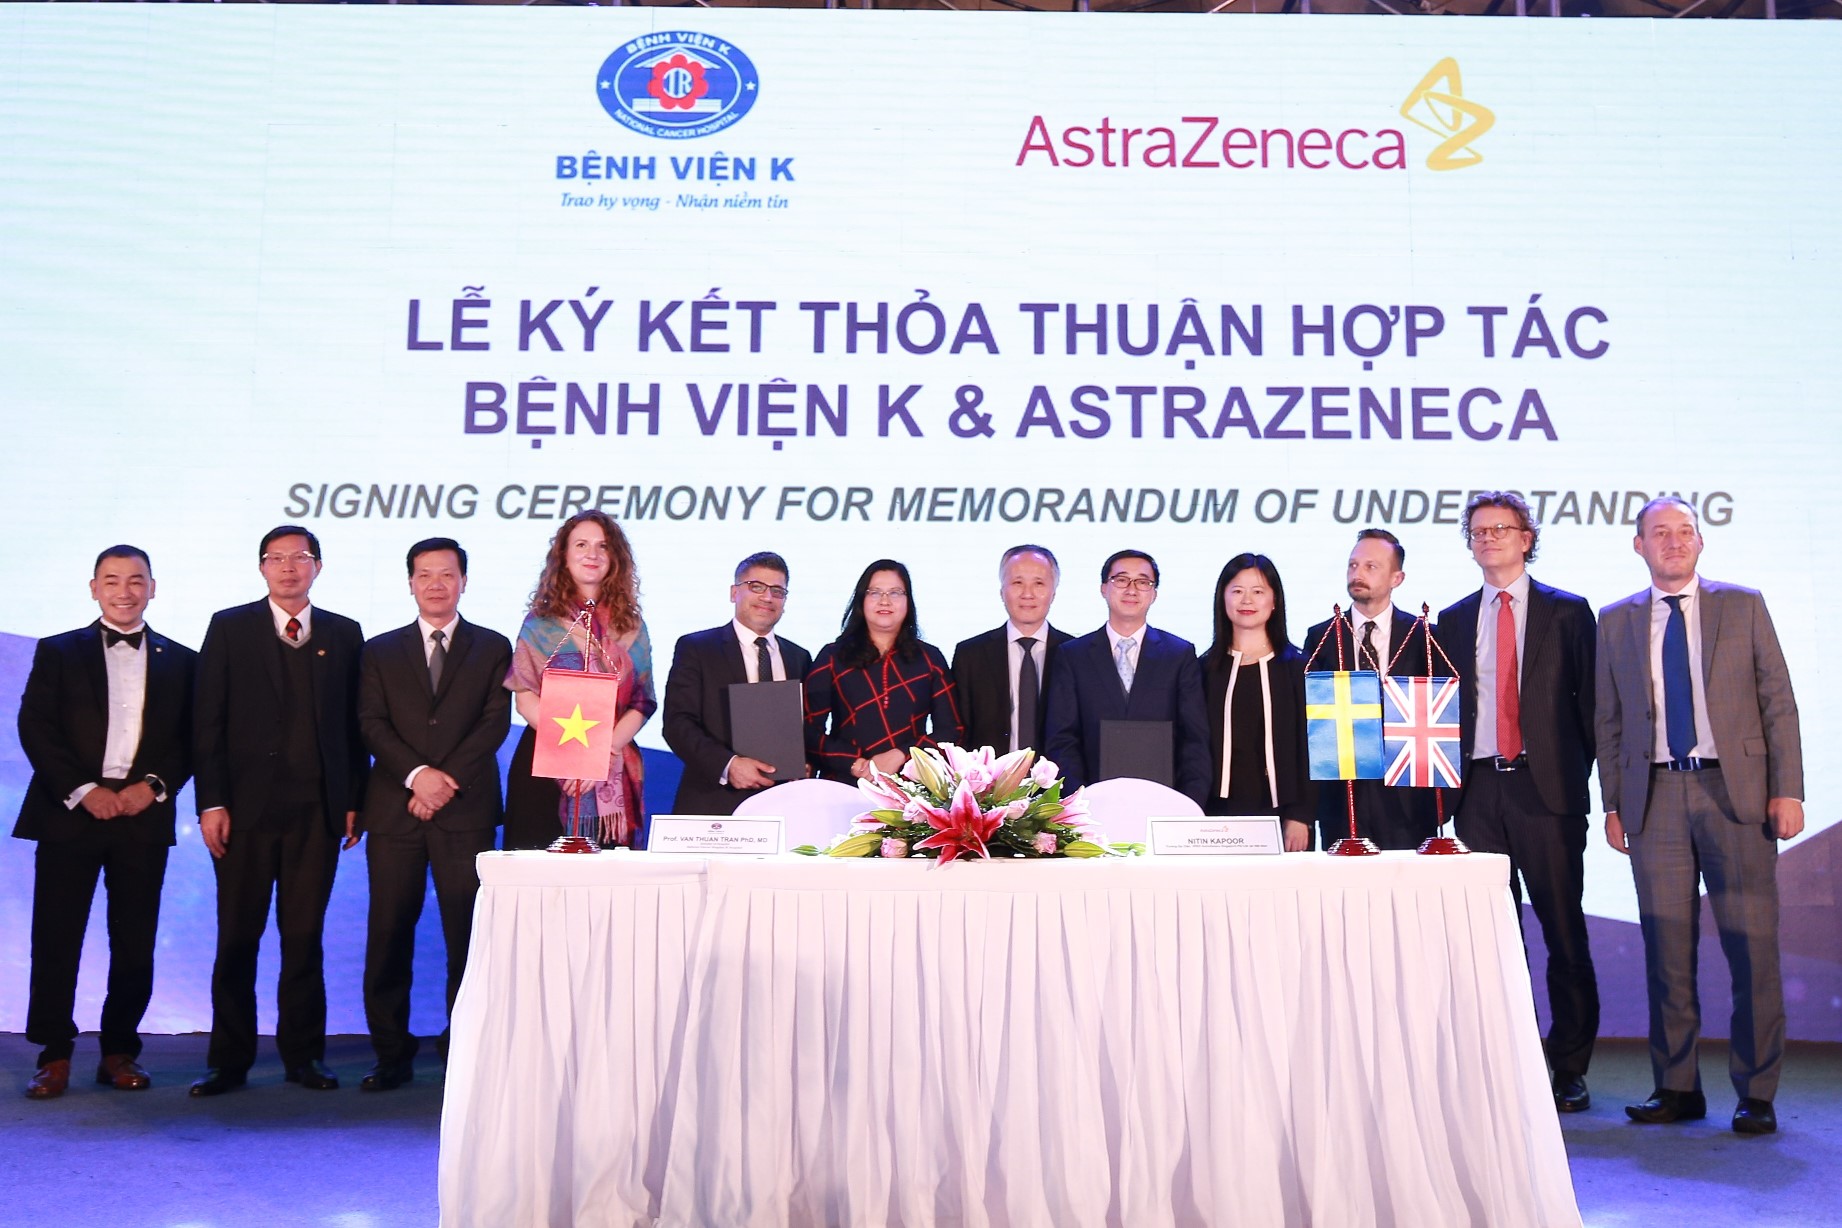 AstraZeneca công bố hợp tác đem lại lợi ích cho bệnh nhân ...